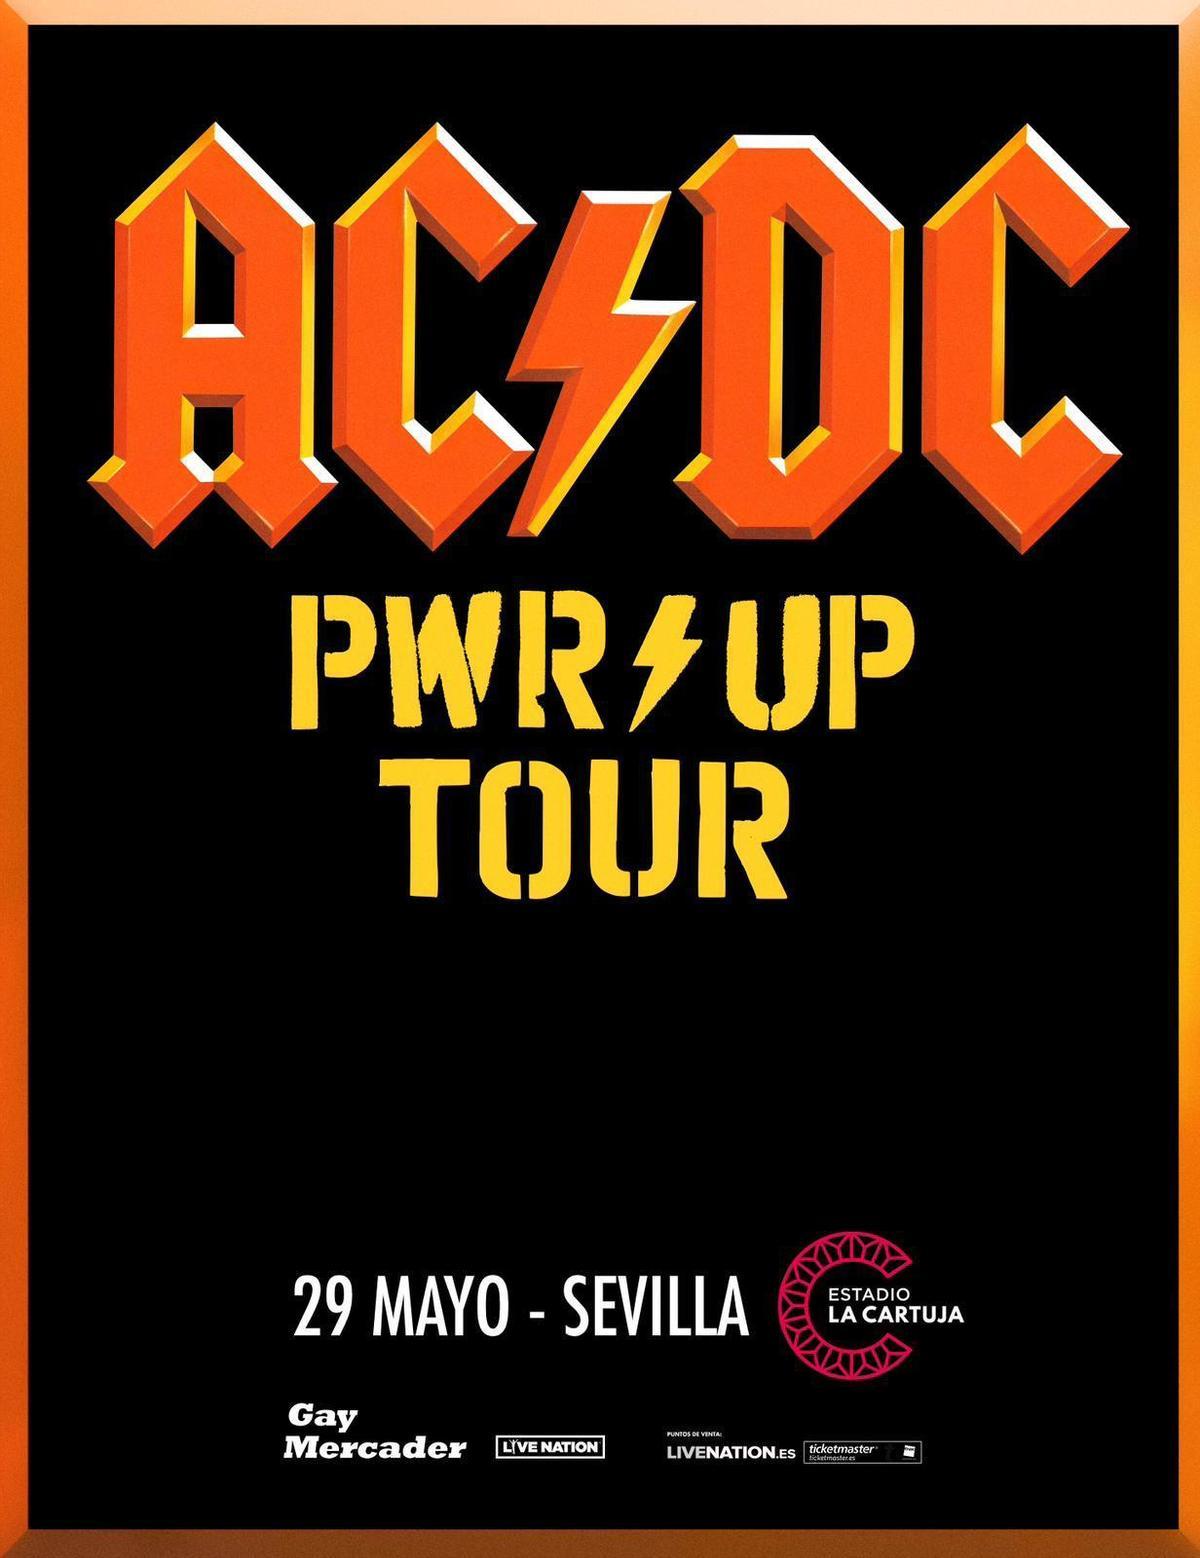 El cartel del concierto de AC/DC en Sevilla